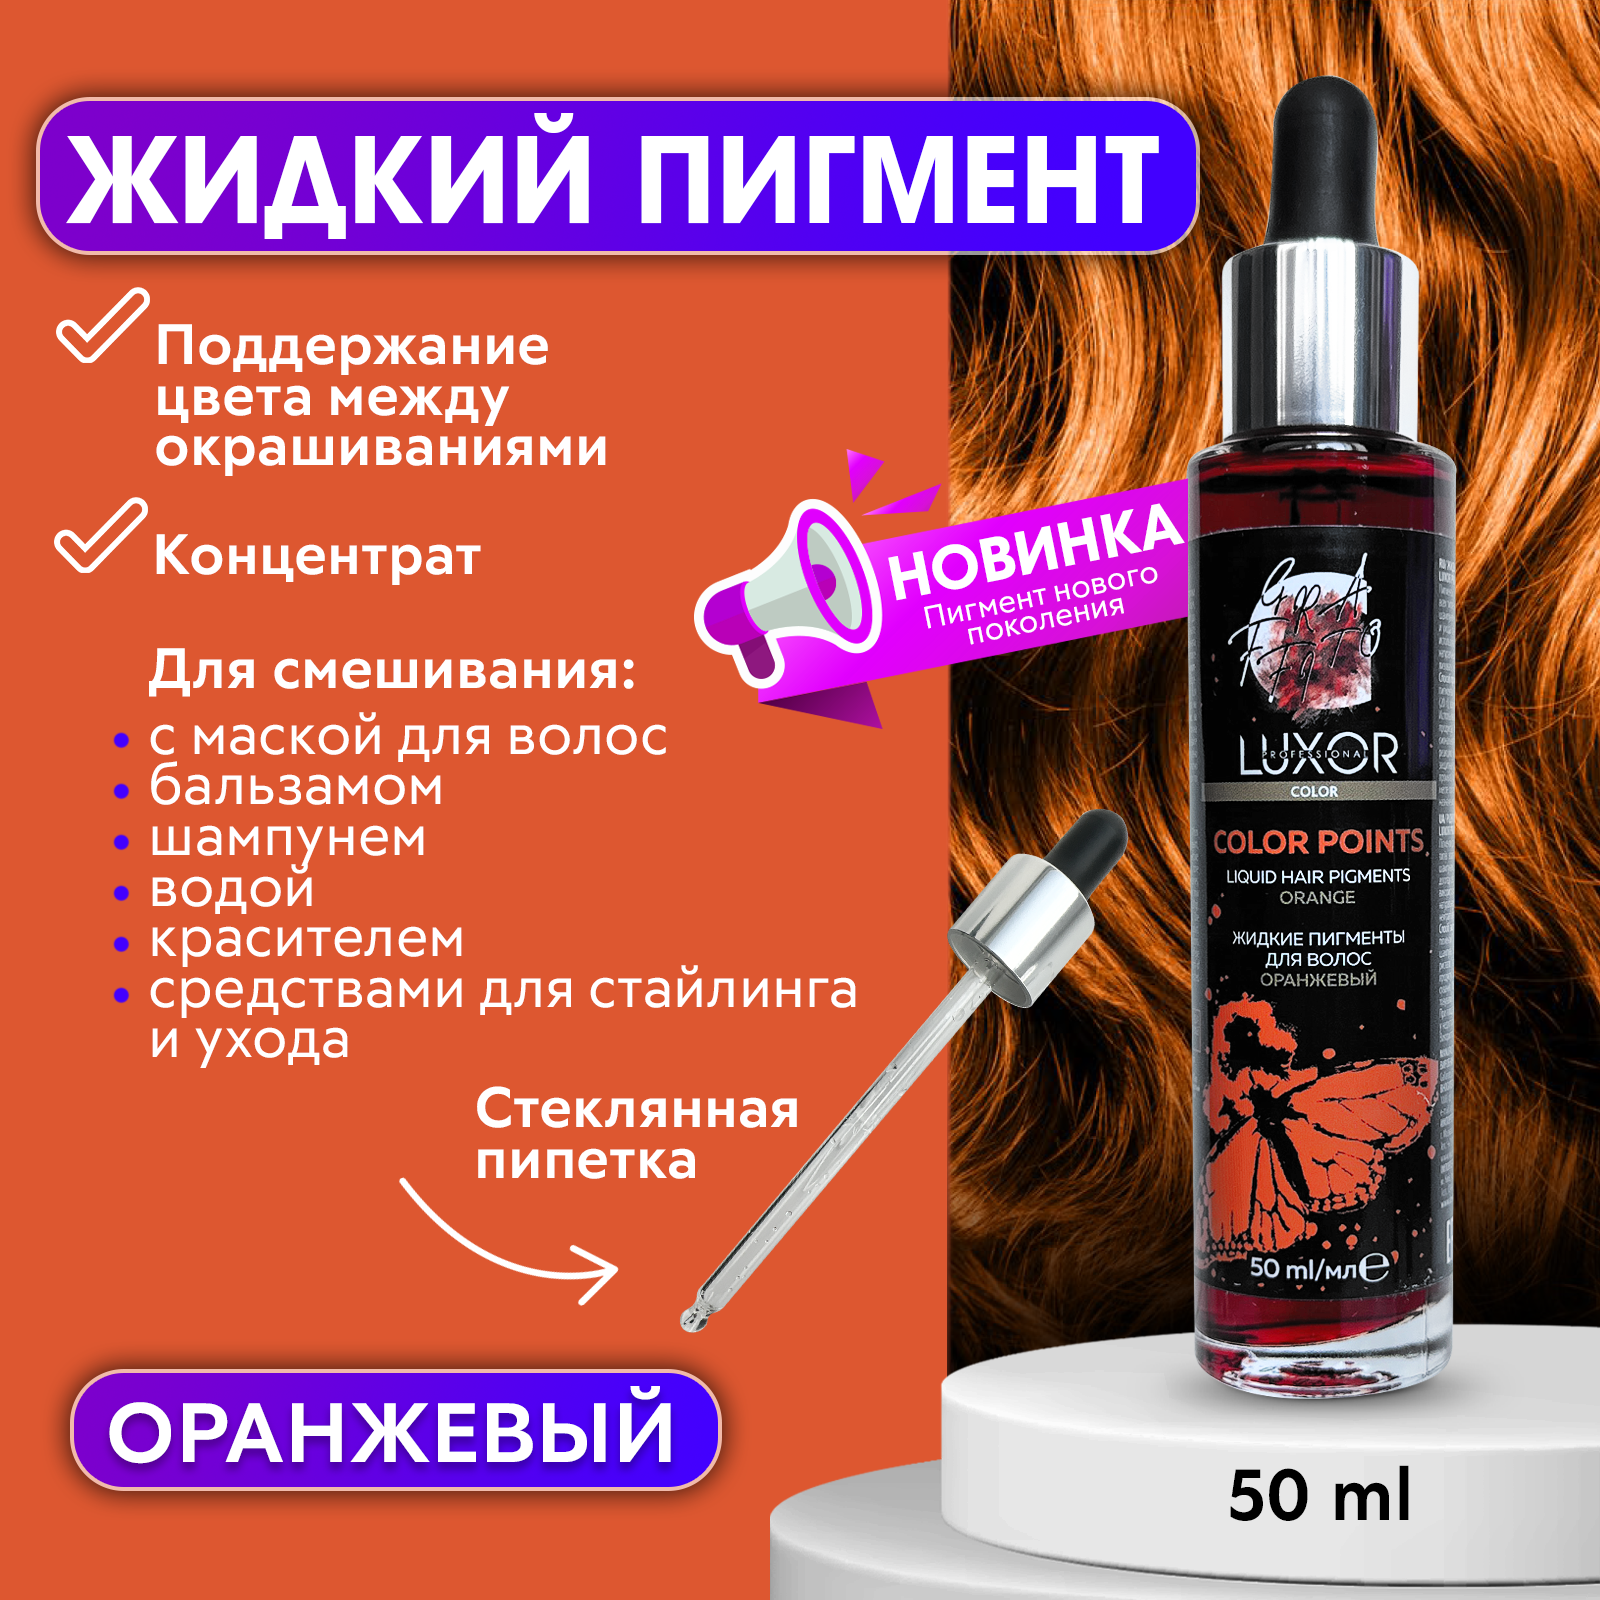 Пигмент Luxor Professional прямого действия для волос 50мл Оранжевый luxor professional тонирующий краситель прямого действия для волос без аммиака и окислителя